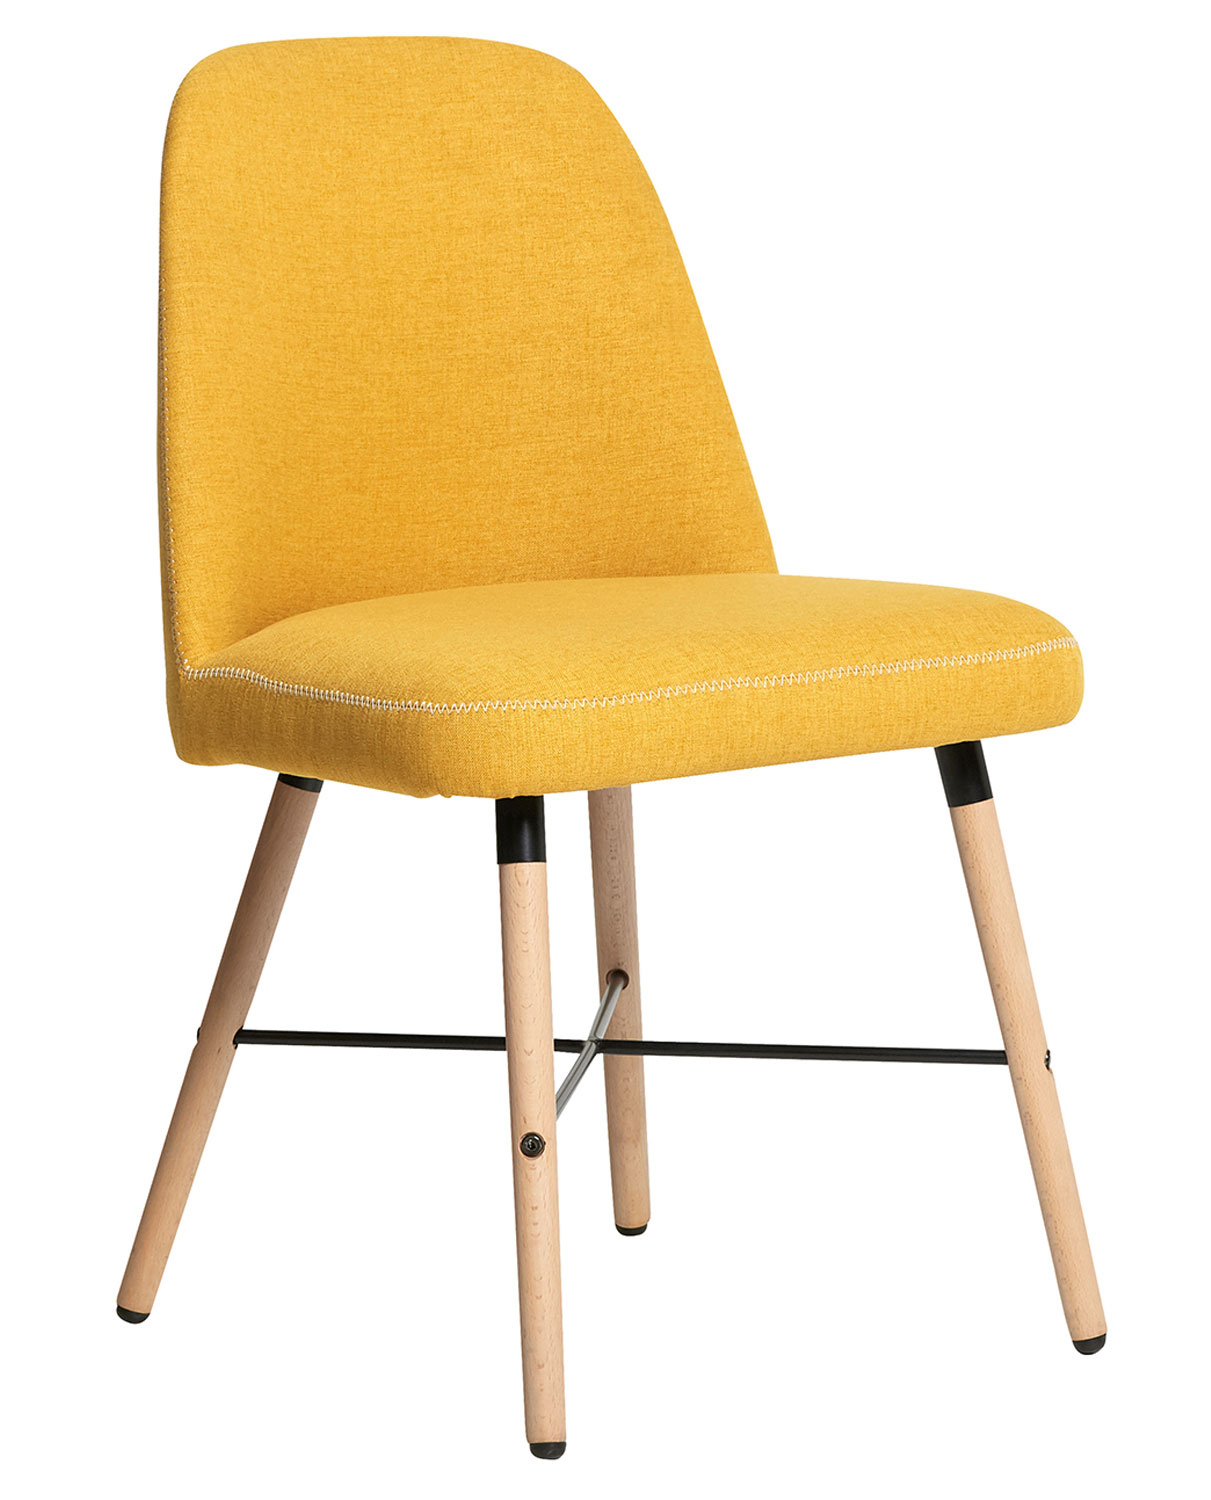 chaise Anversa Bari 154 yellow 1